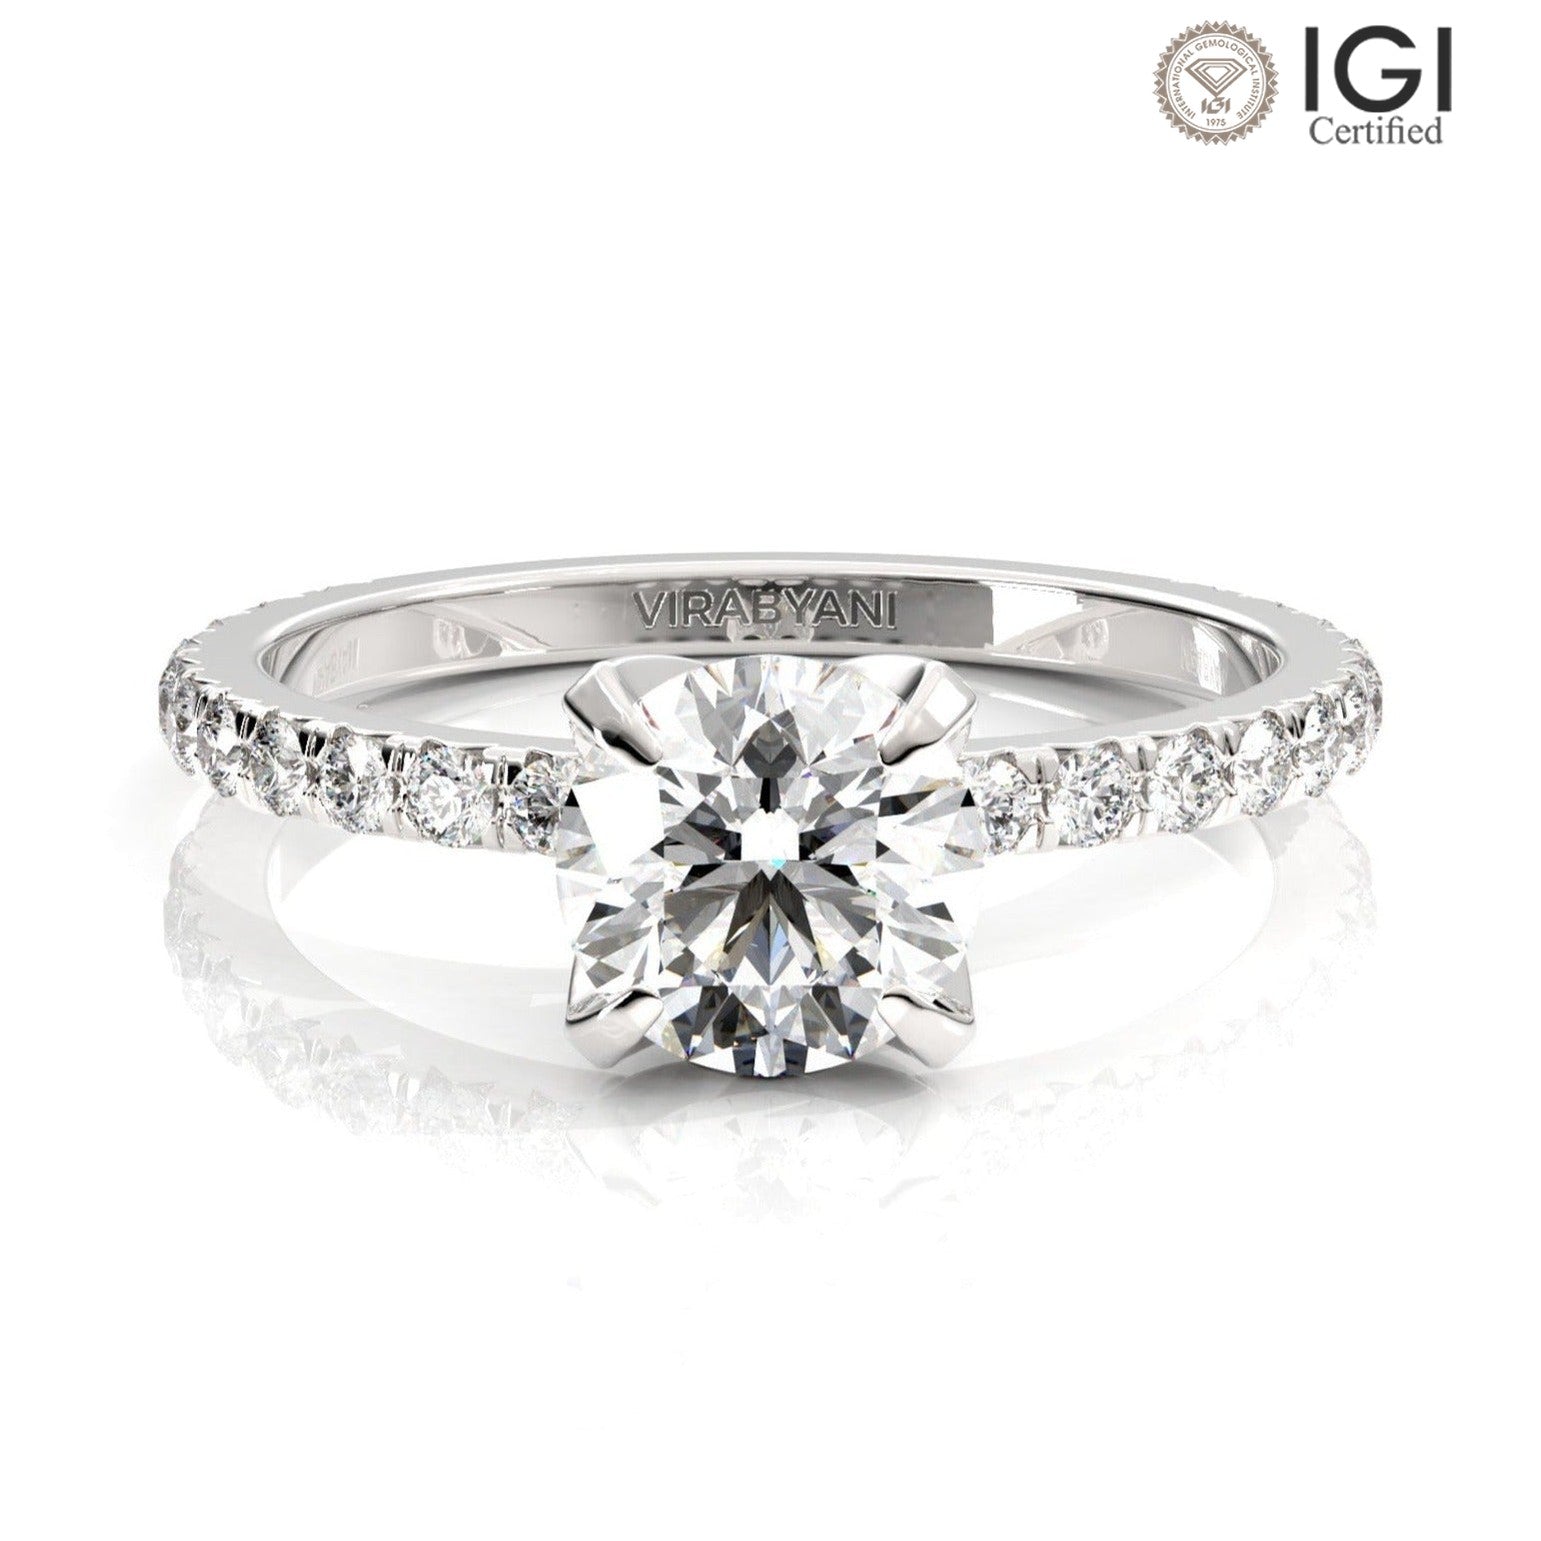 Chiara Round Lab Grown Diamond Engagement Ring IGI Certified